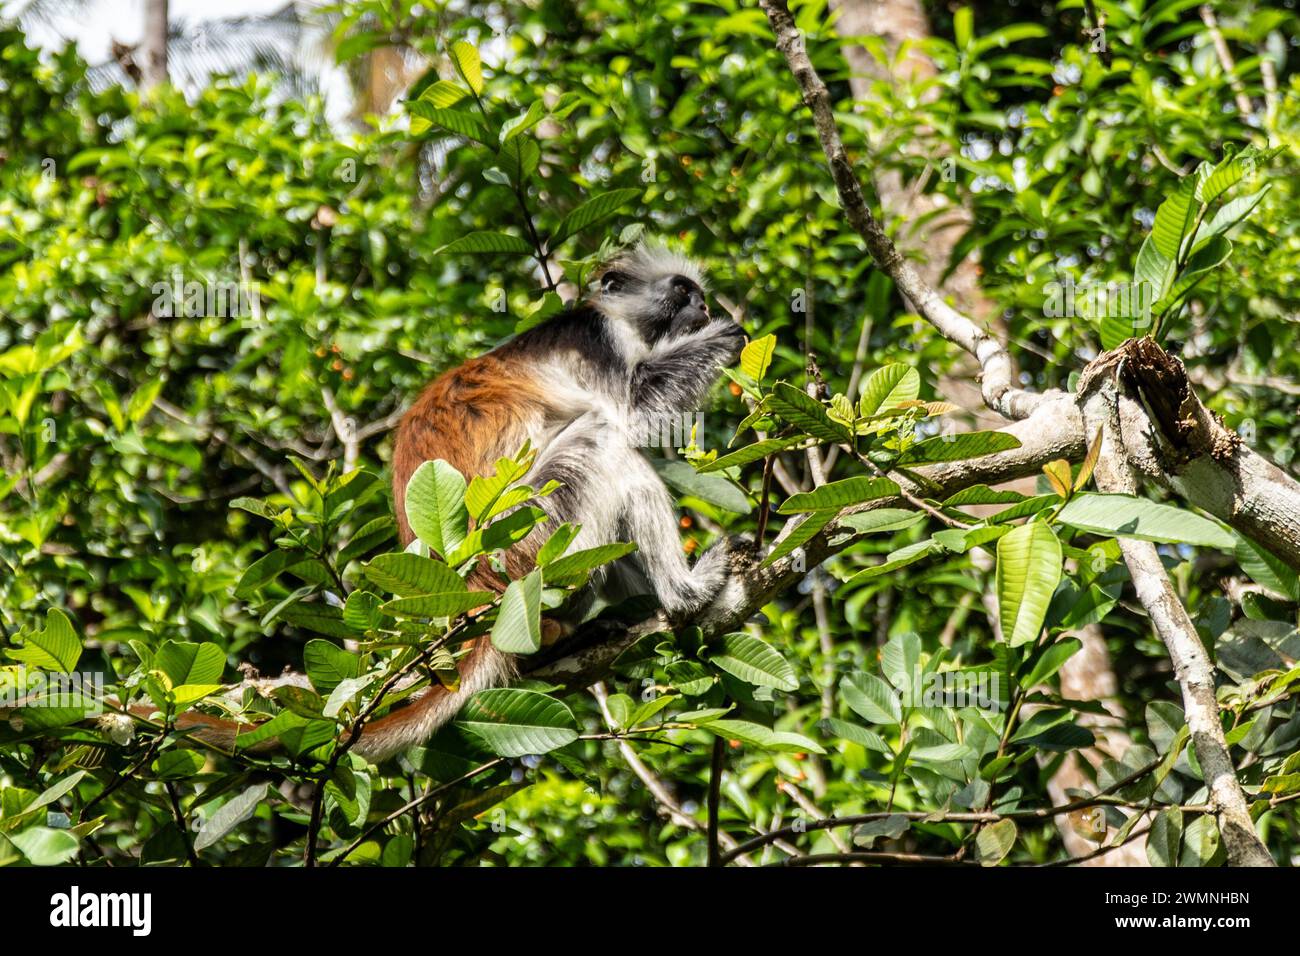 Zanzibar Red Colobus (Piliocolobus kirkii), noto anche come Kirk's Red Colobus, è endemica di Unguja, l'isola principale dell'arcipelago di Zanzibar. T Foto Stock